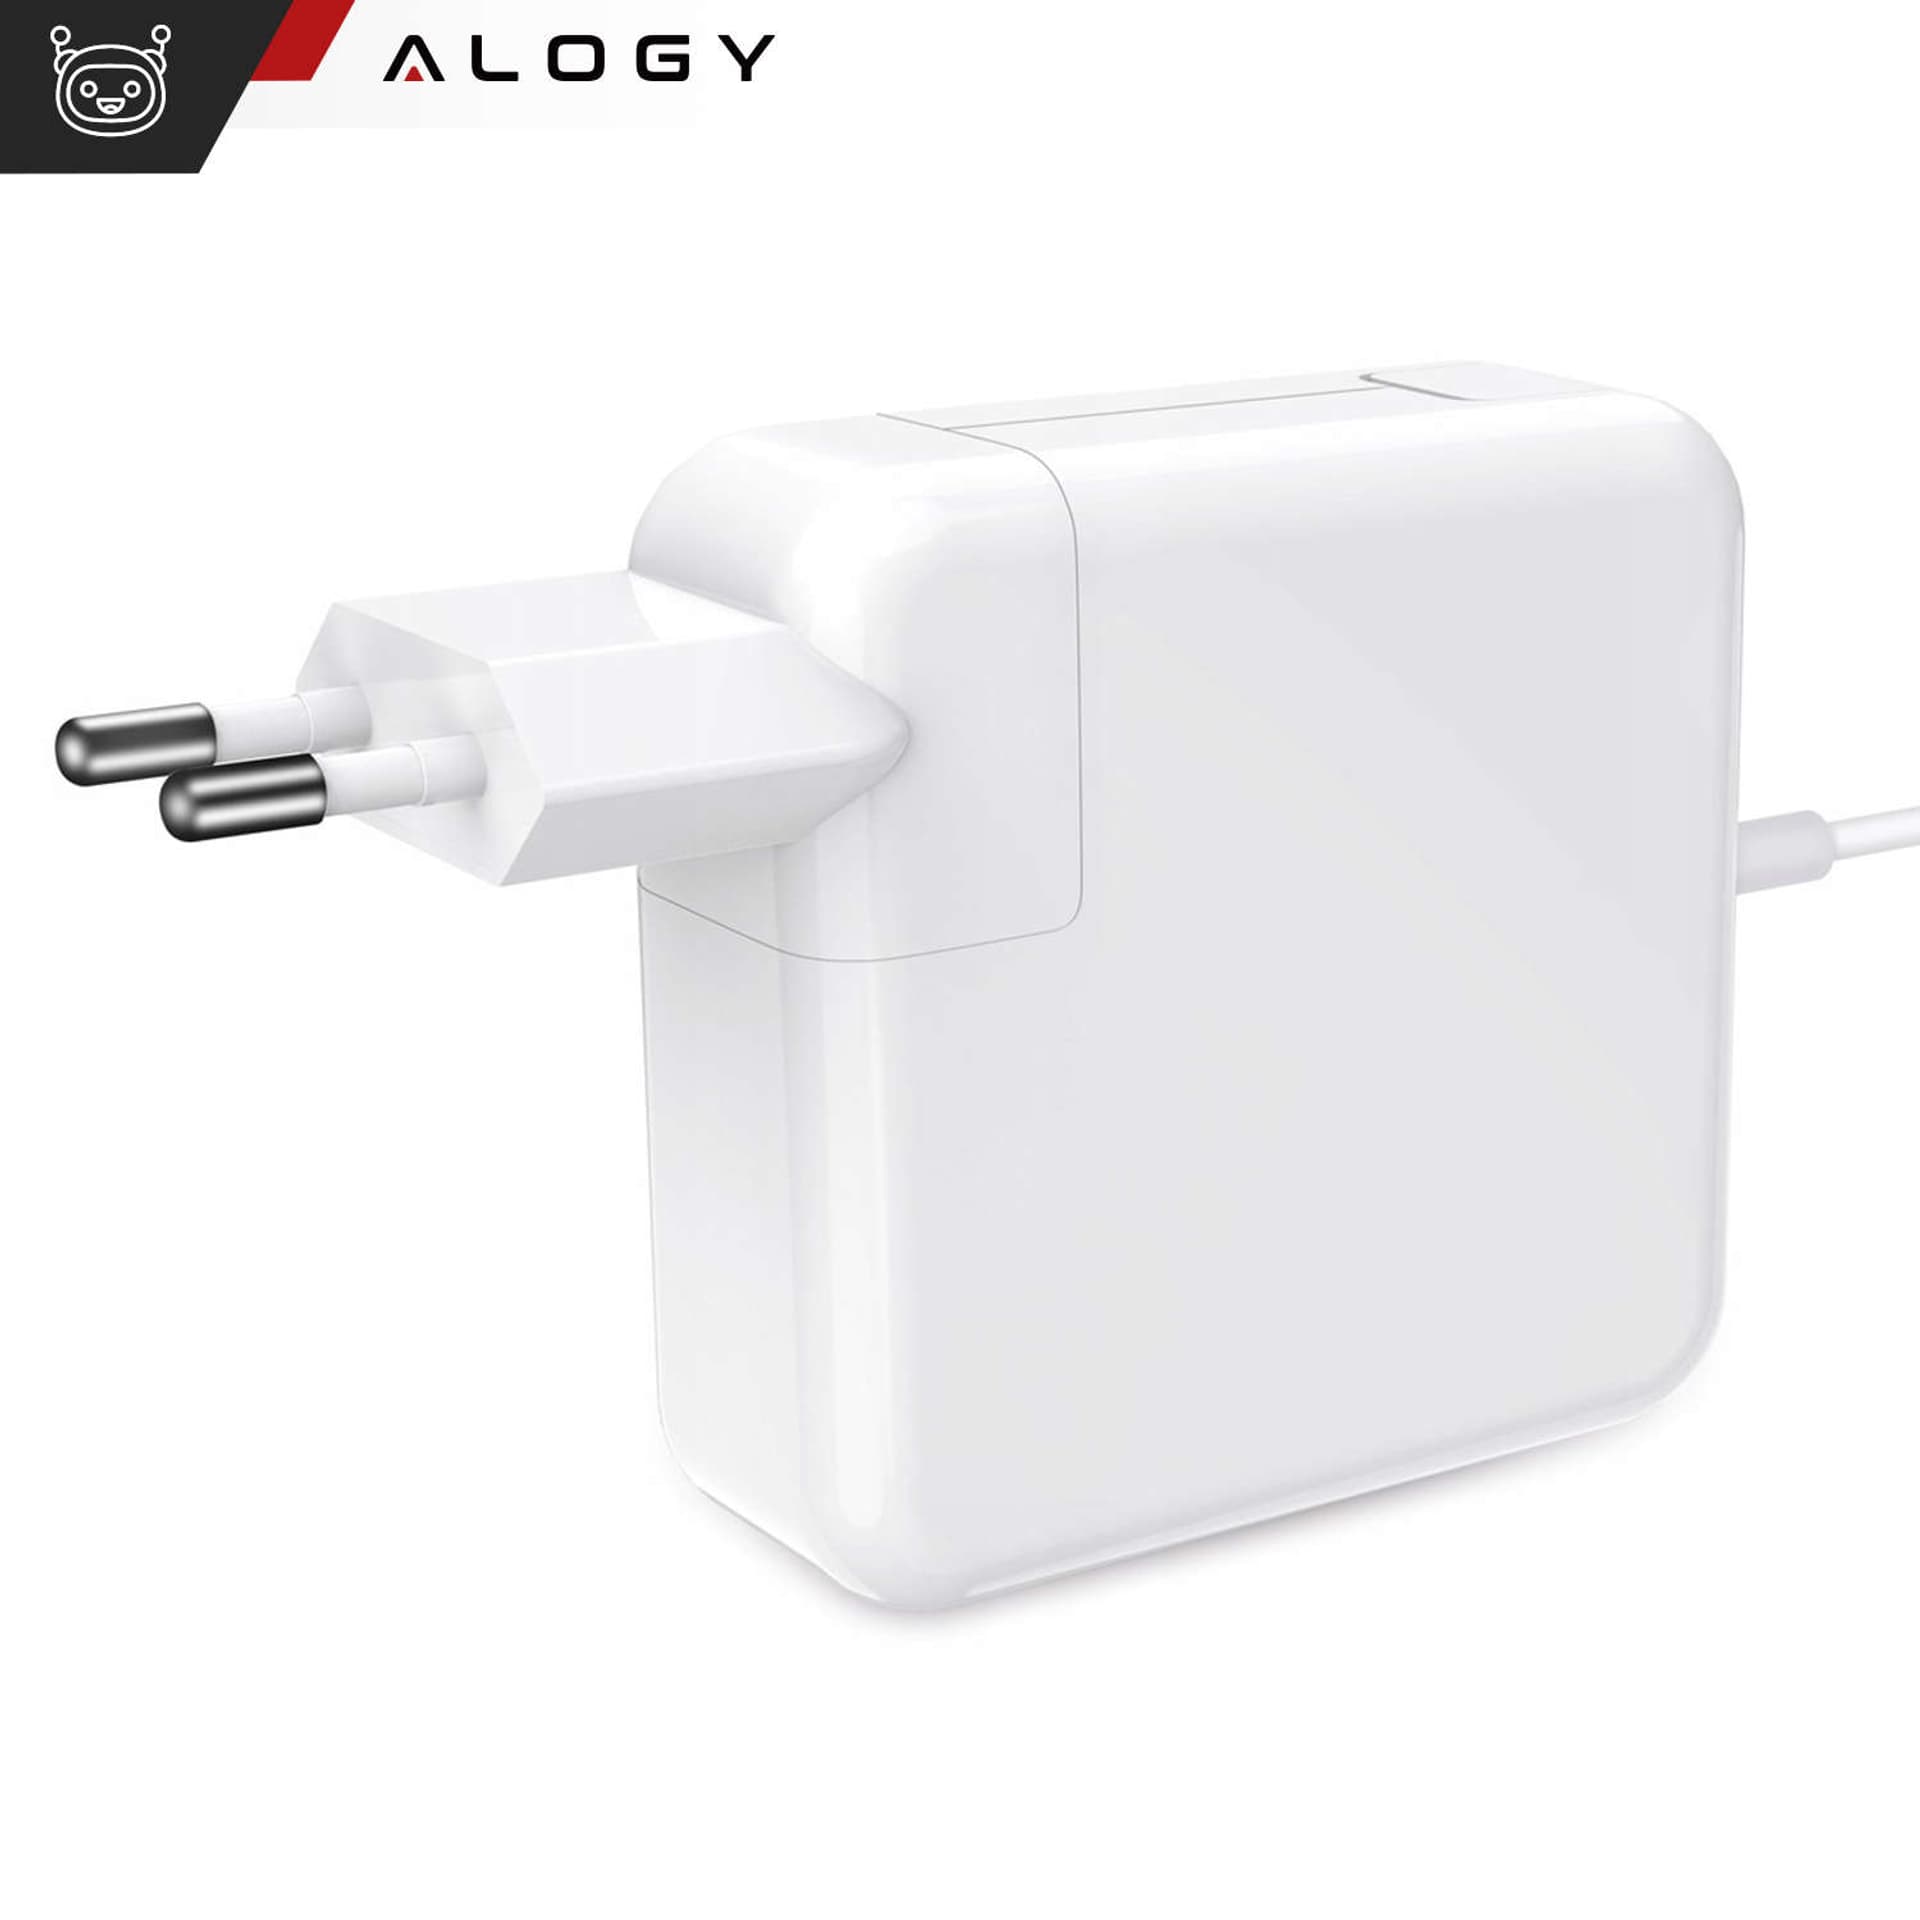 

Ładowarka zasilacz do MacBooka Alogy Charger do Apple MacBook MagSafe 2 T-type 60W Biała